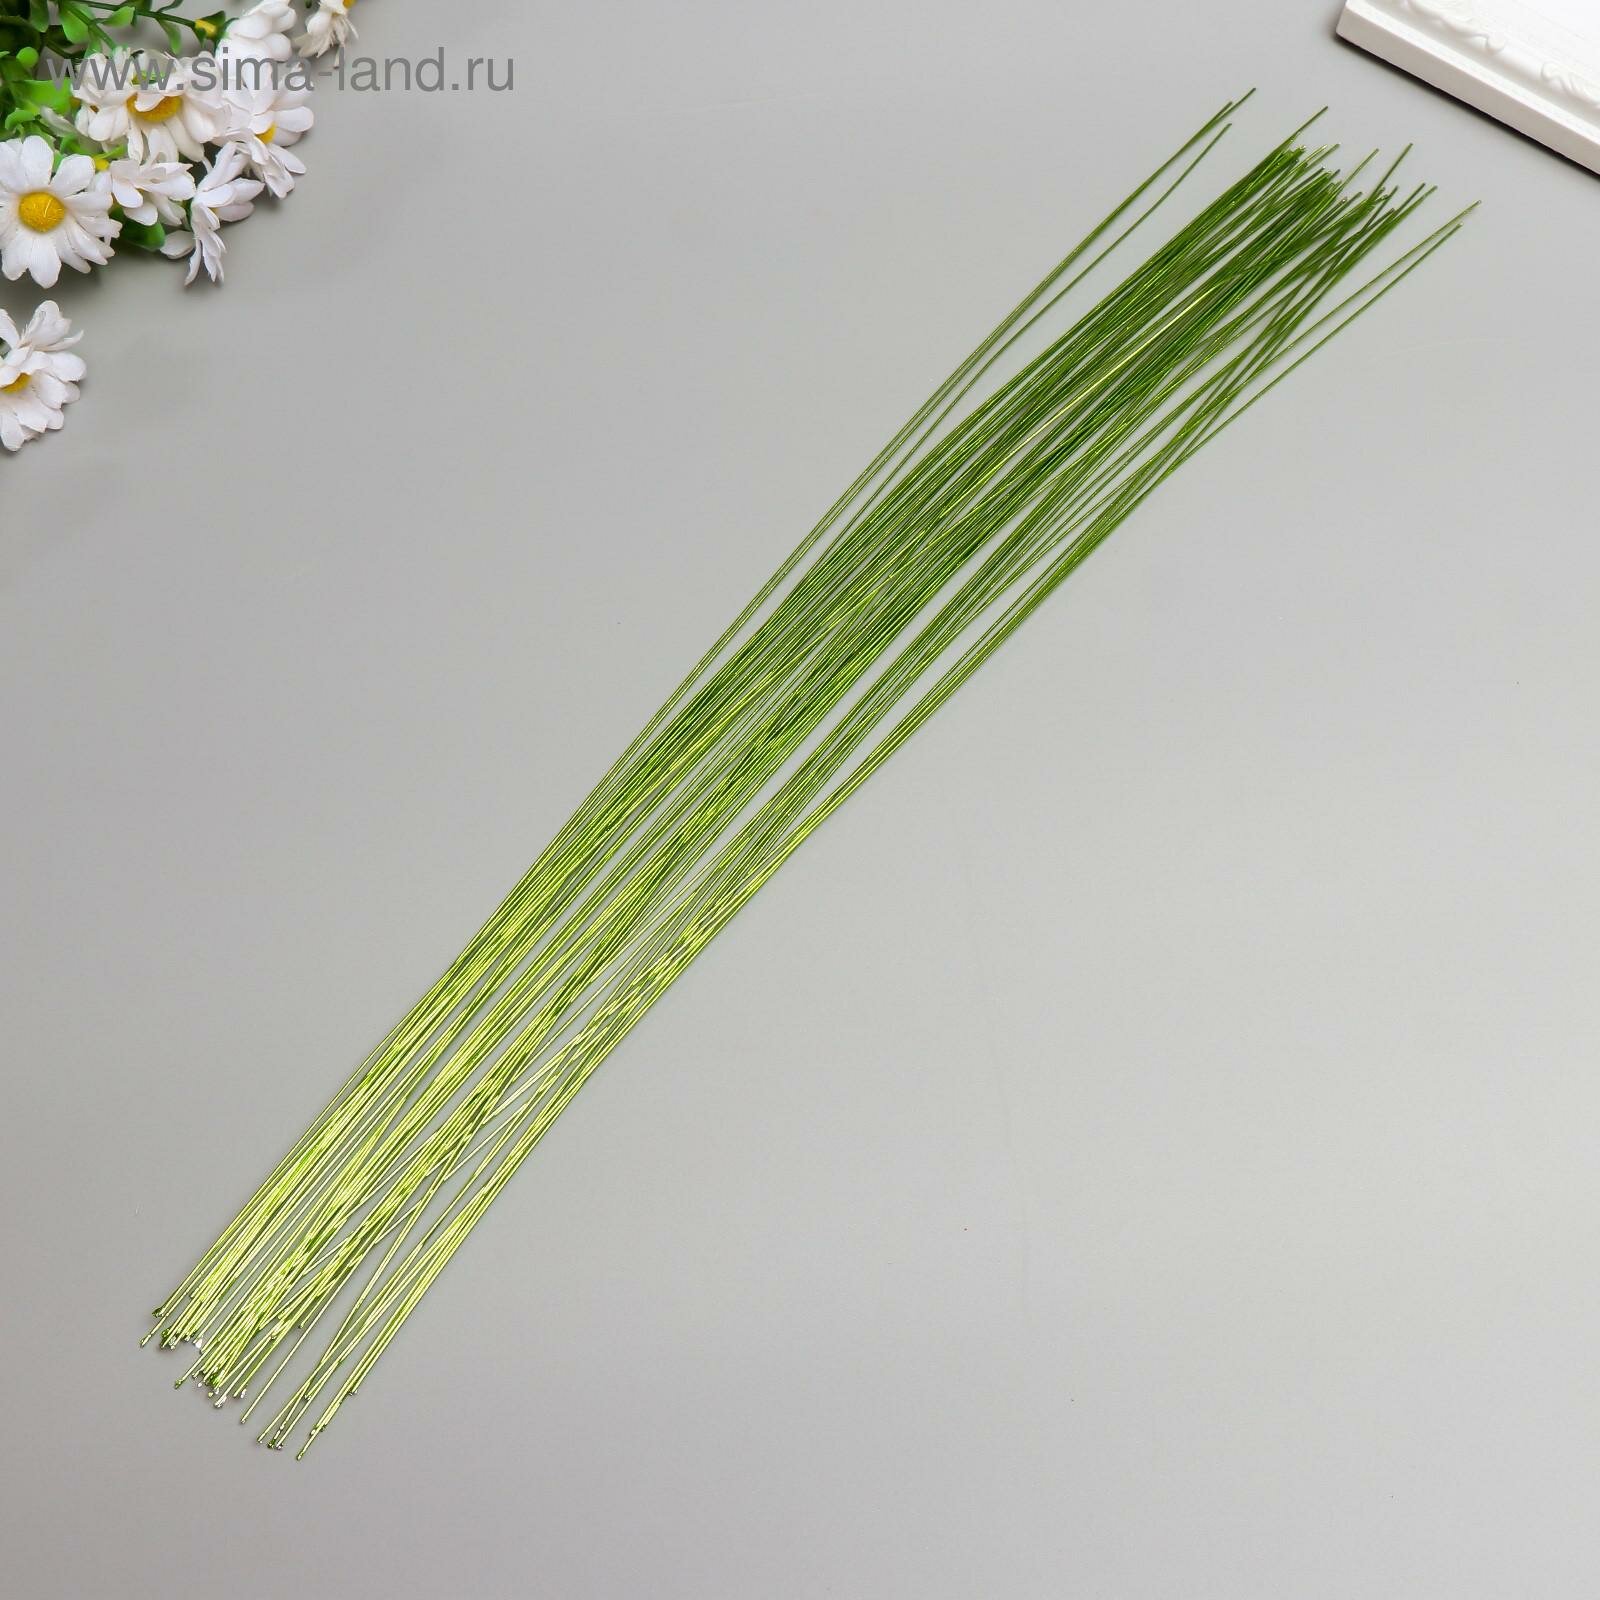 Проволока для изготовления искусственных цветов "Зелёная хром" длина 40 см сечение 0,7 мм (50шт.)